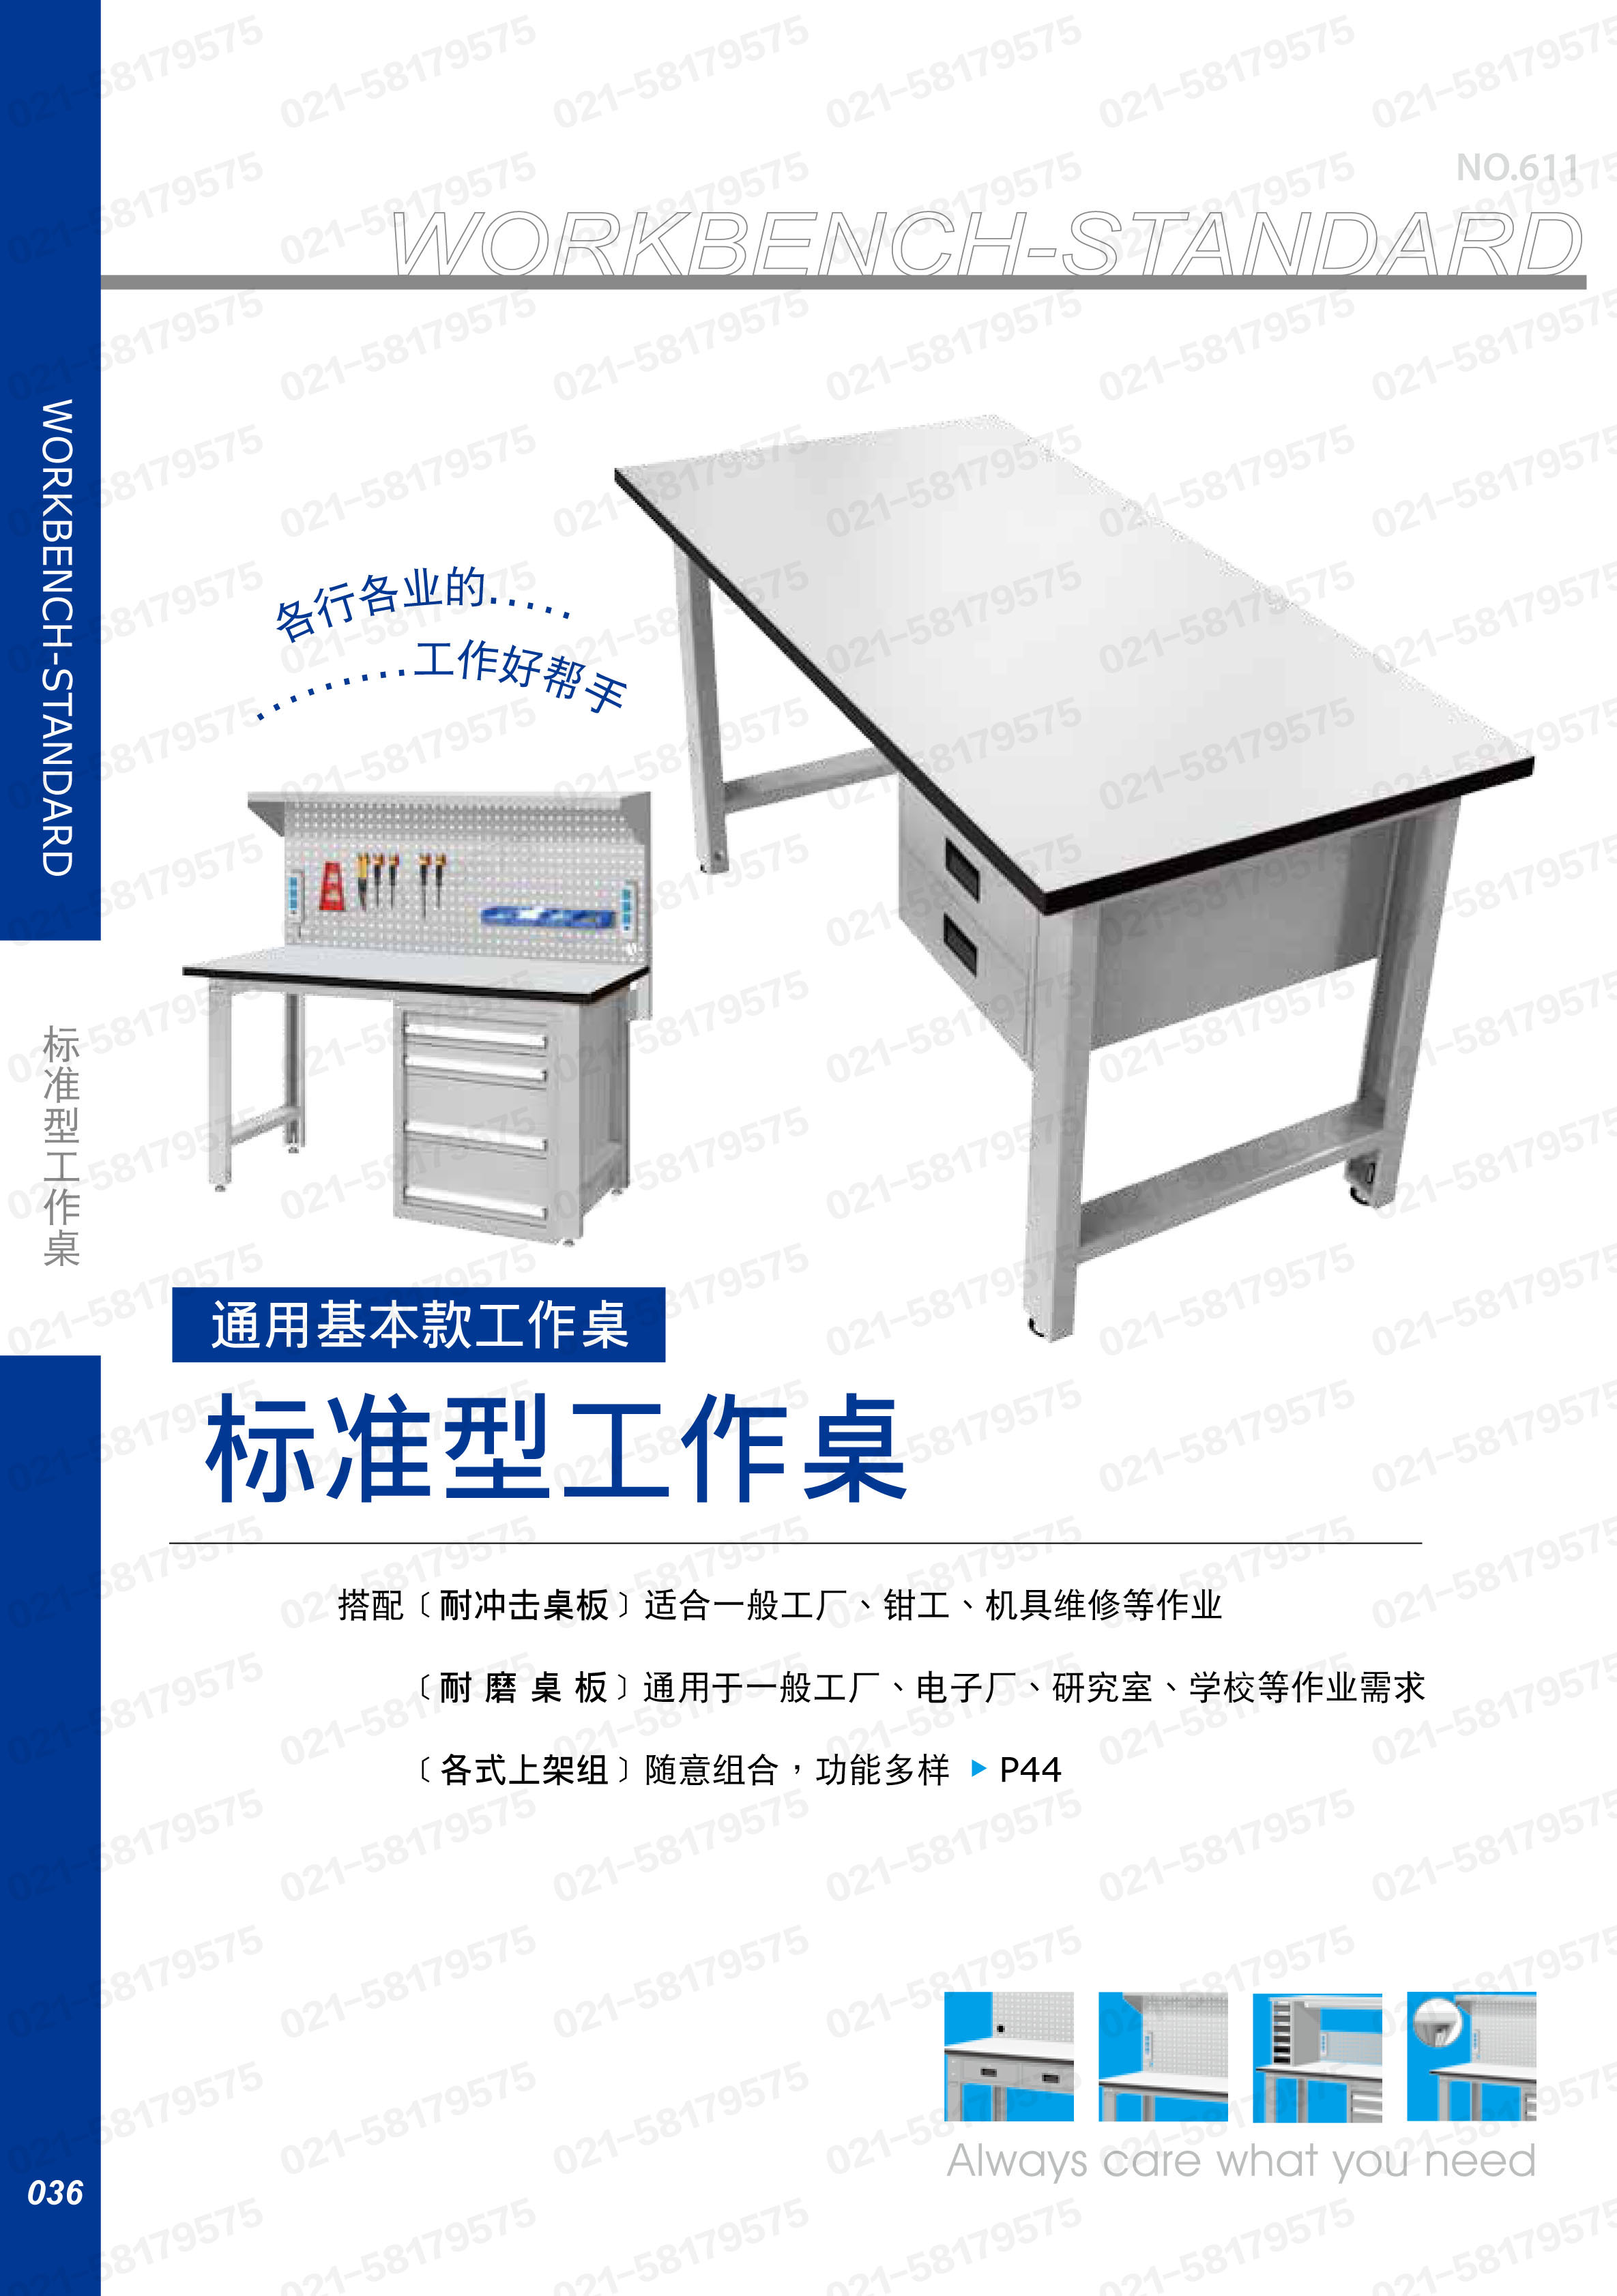 轻型工作桌1500×750×800mm 耐冲击桌板 带双吊抽，WBS-53021N，5D2934